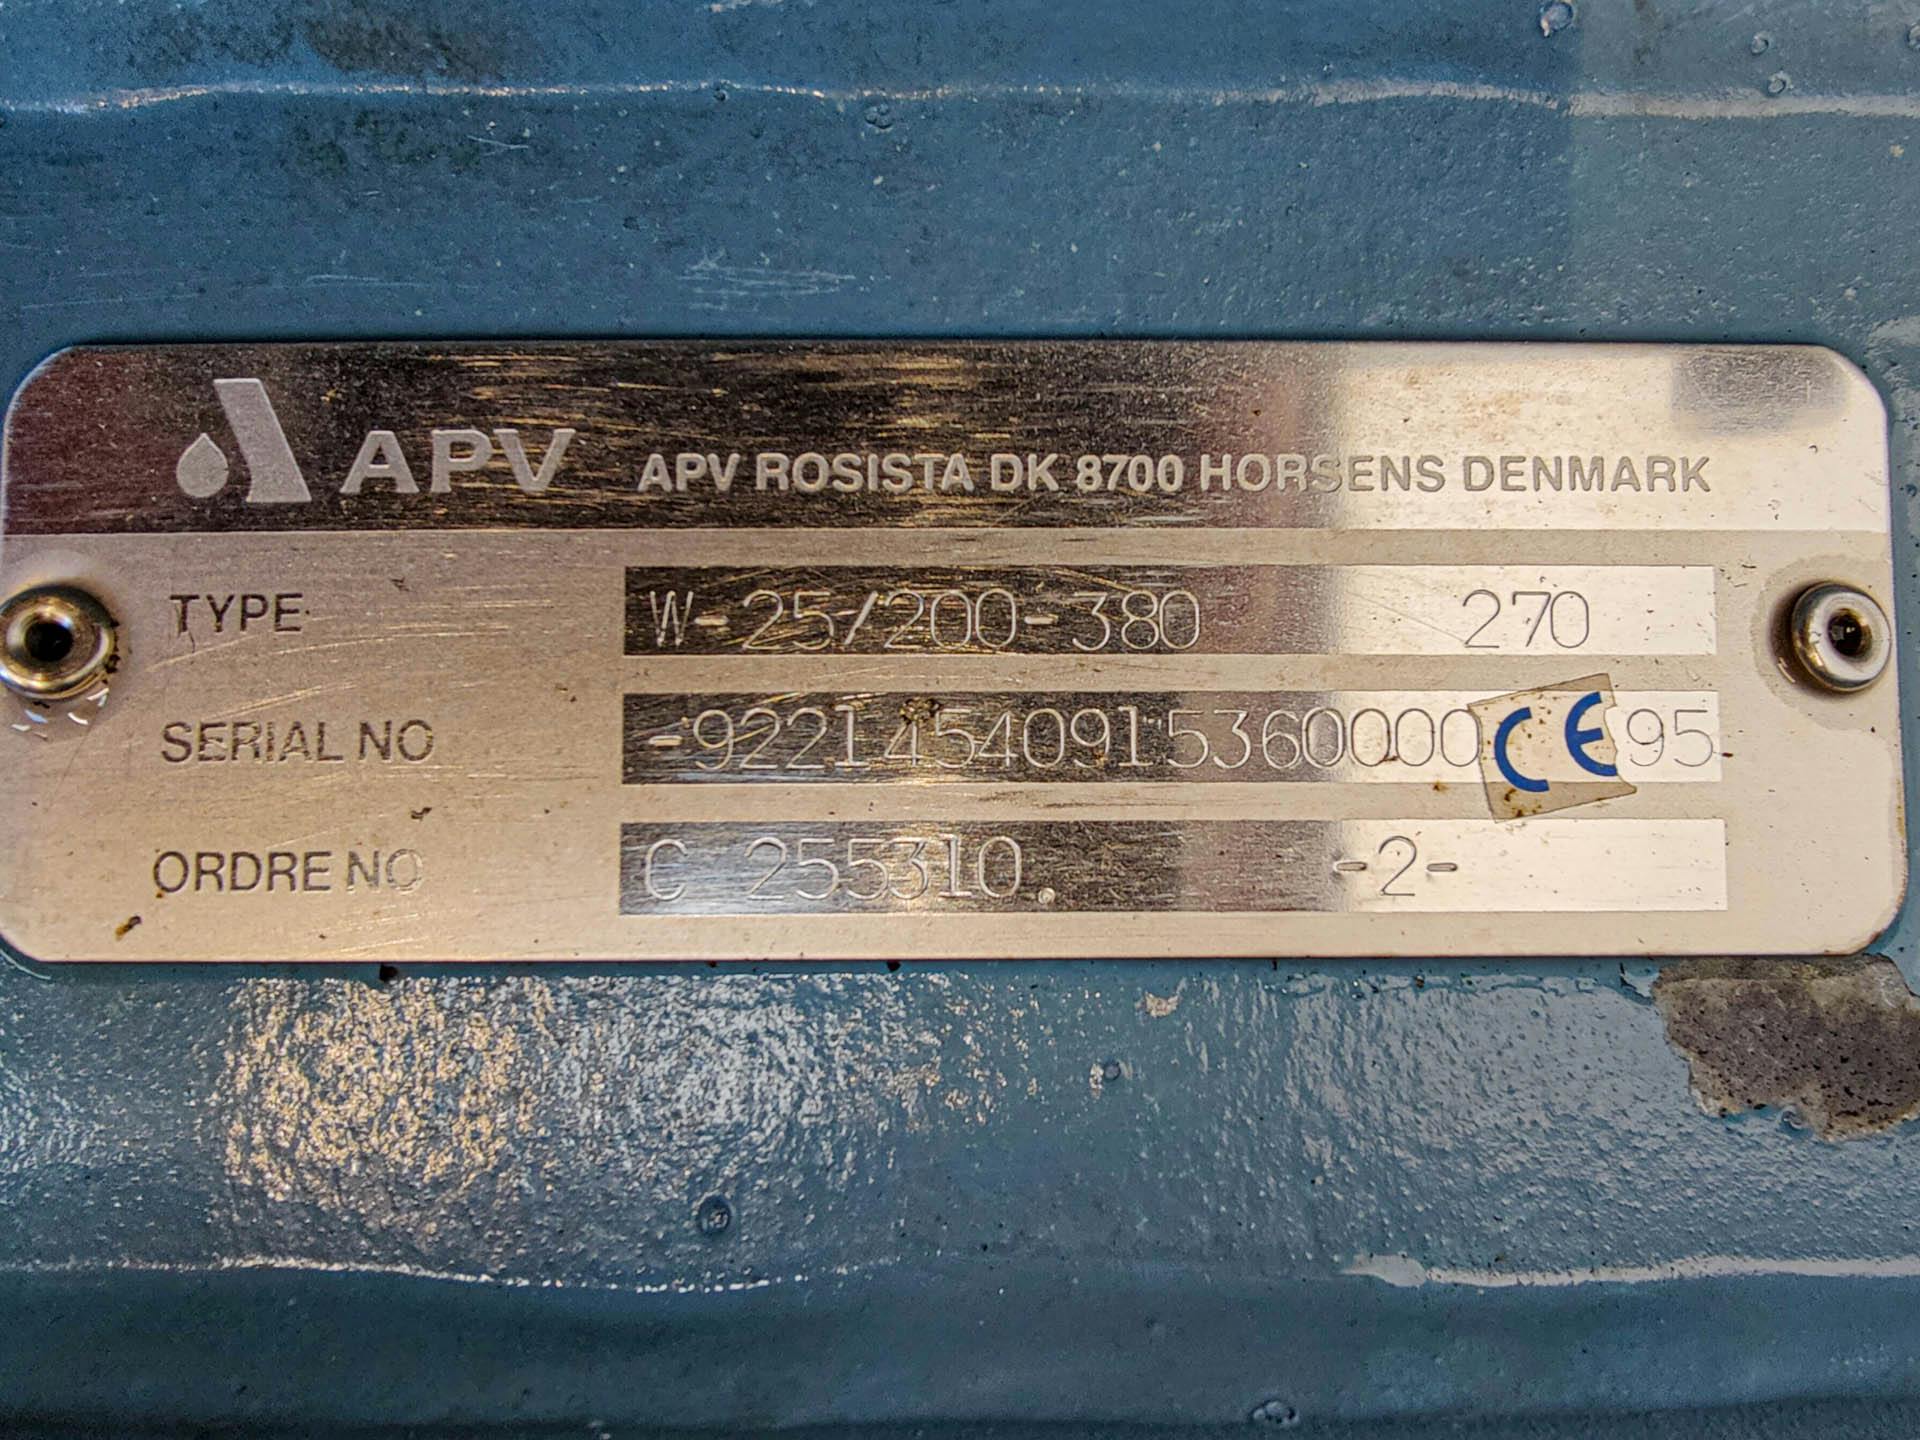 APV Rosista W-25/200-380 - Pompa odśrodkowa - image 5